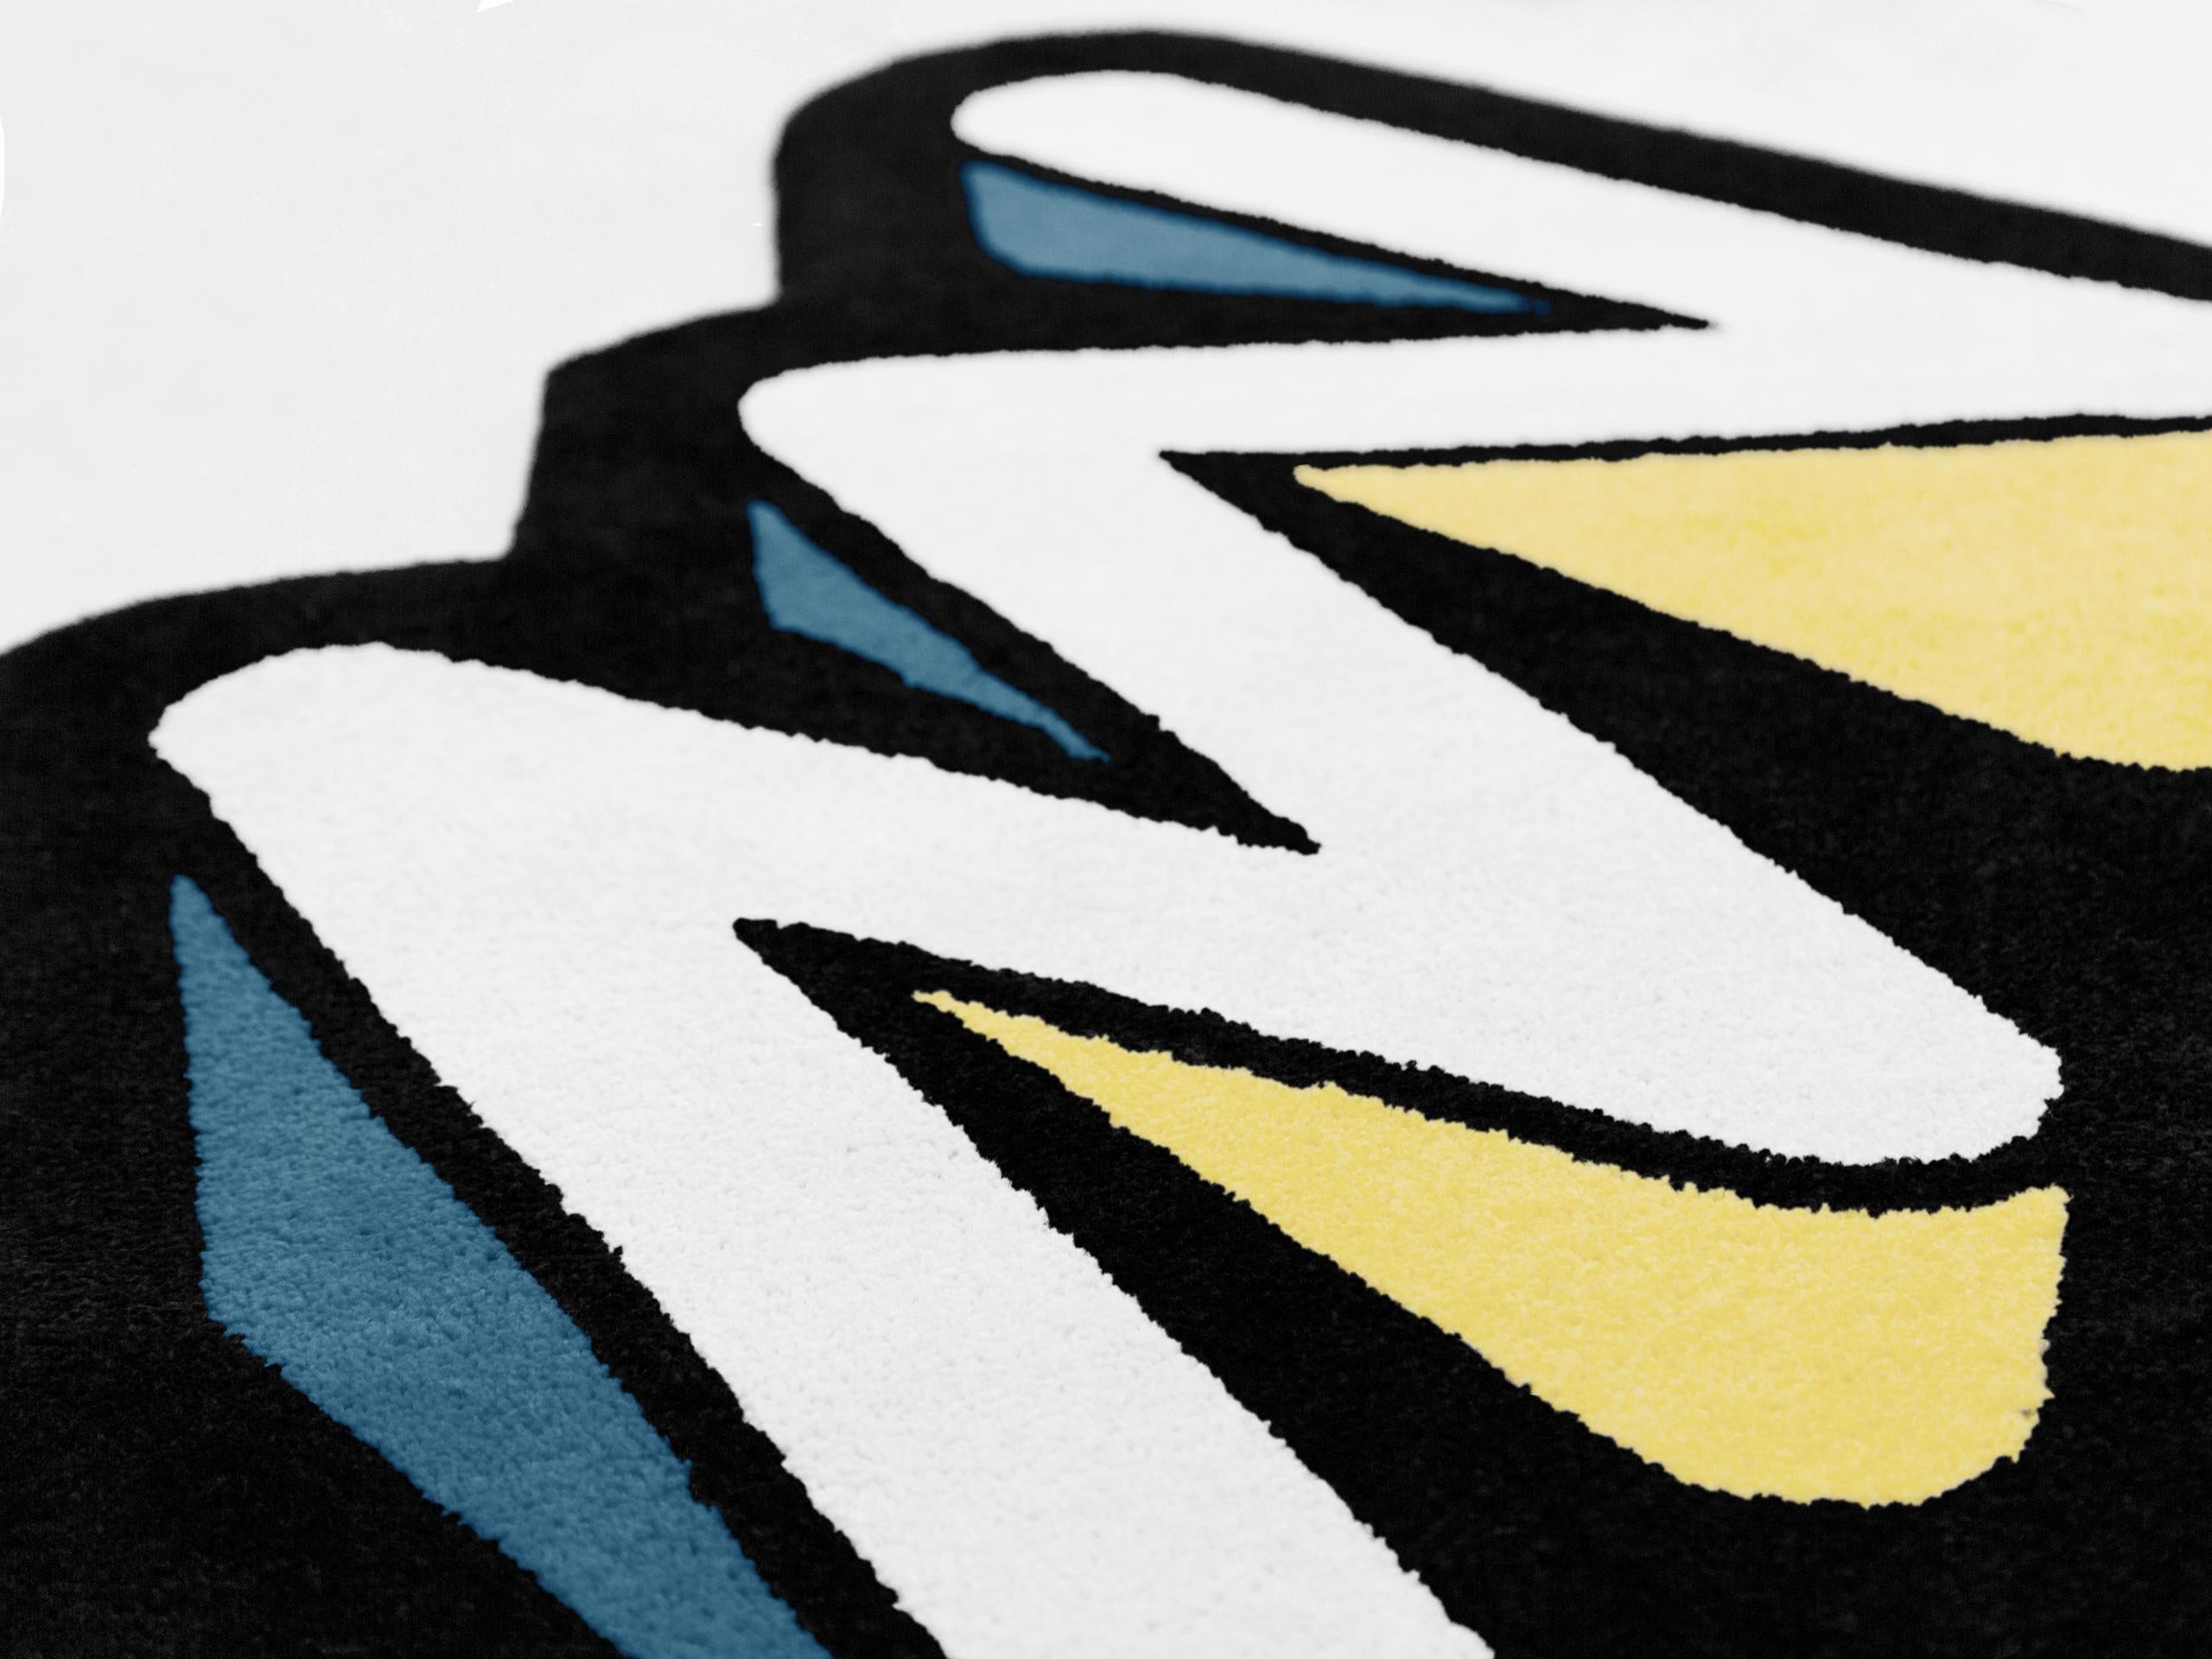 Diese von Graffiti inspirierte Teppichkollektion zeichnet sich durch einfache und klar definierte Merkmale, ausdrucksstarke Linien und Details aus, die Licht, Schatten und Tiefe suggerieren.
Die Herstellungstechnik ist das Tufting: Auf einem